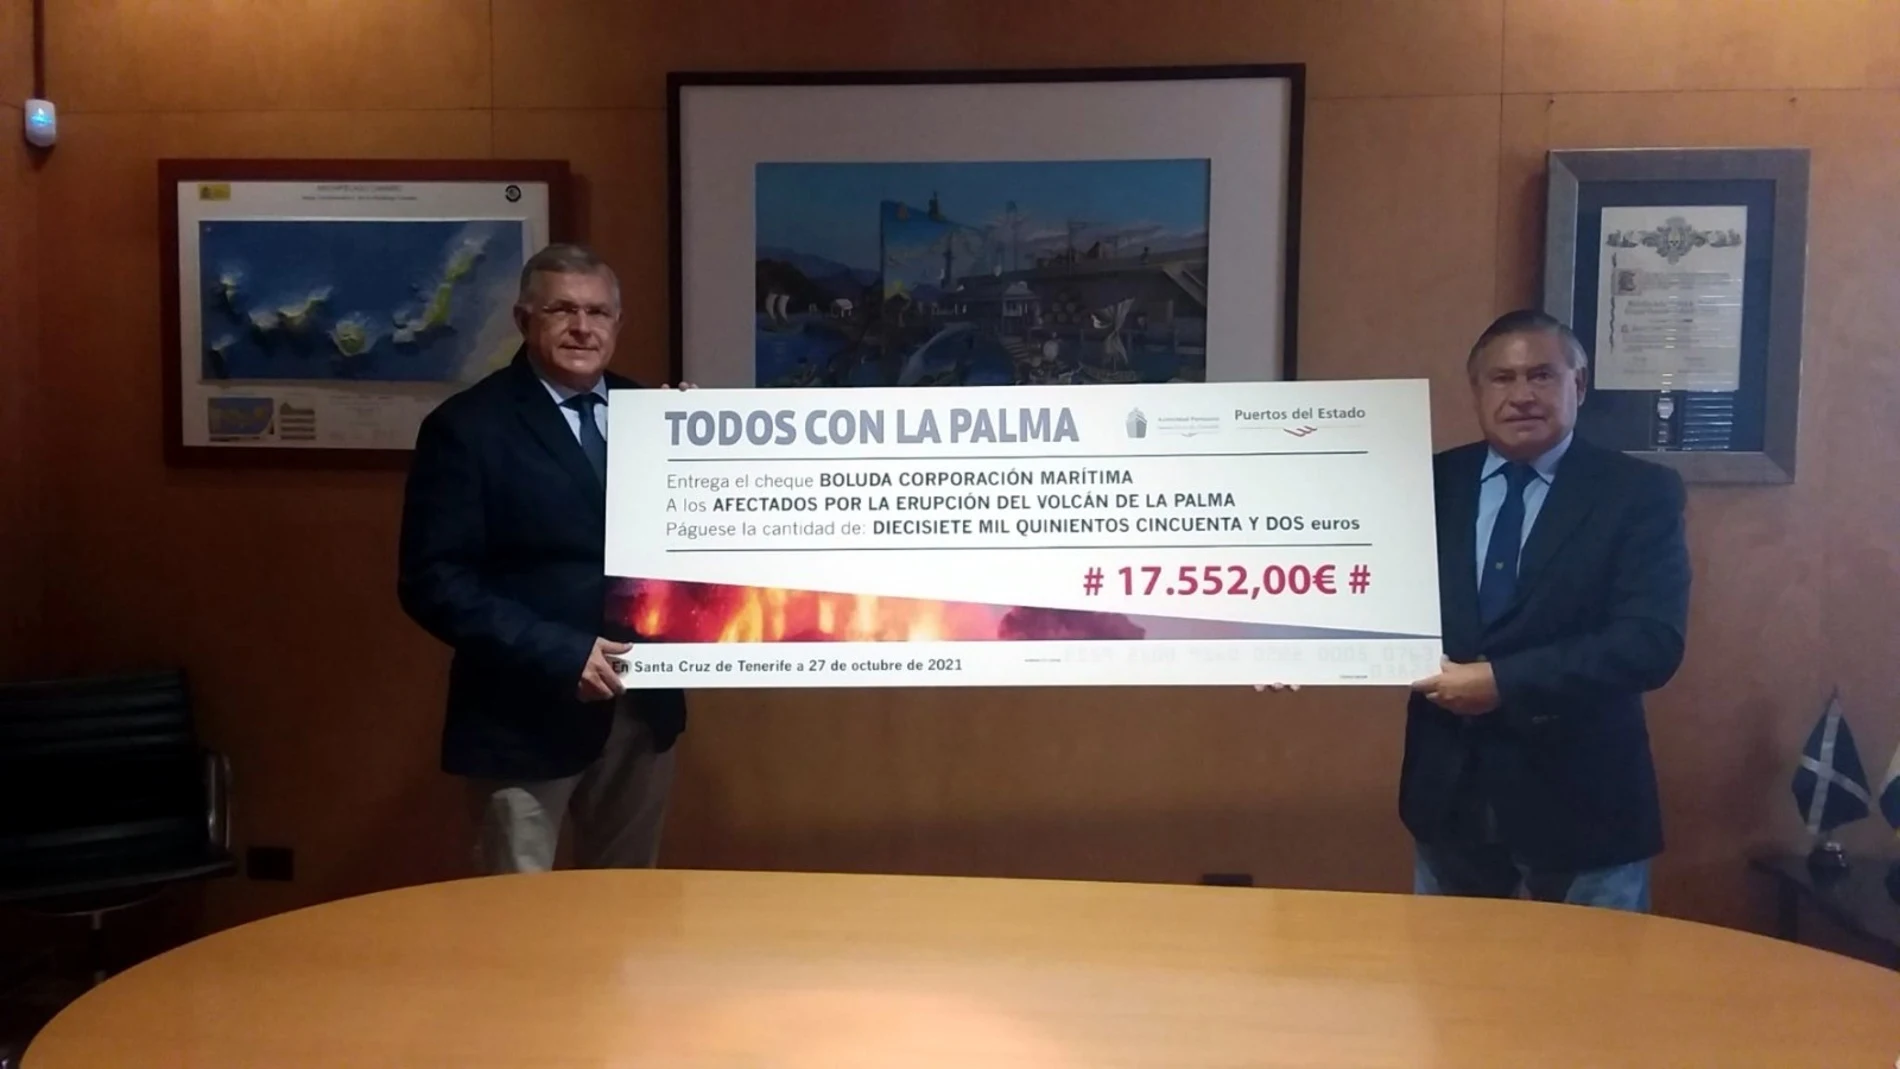 Boluda Corporación Marítima se suma a la campaña "Todos con La Palma" con una aportación de 17.552 euros